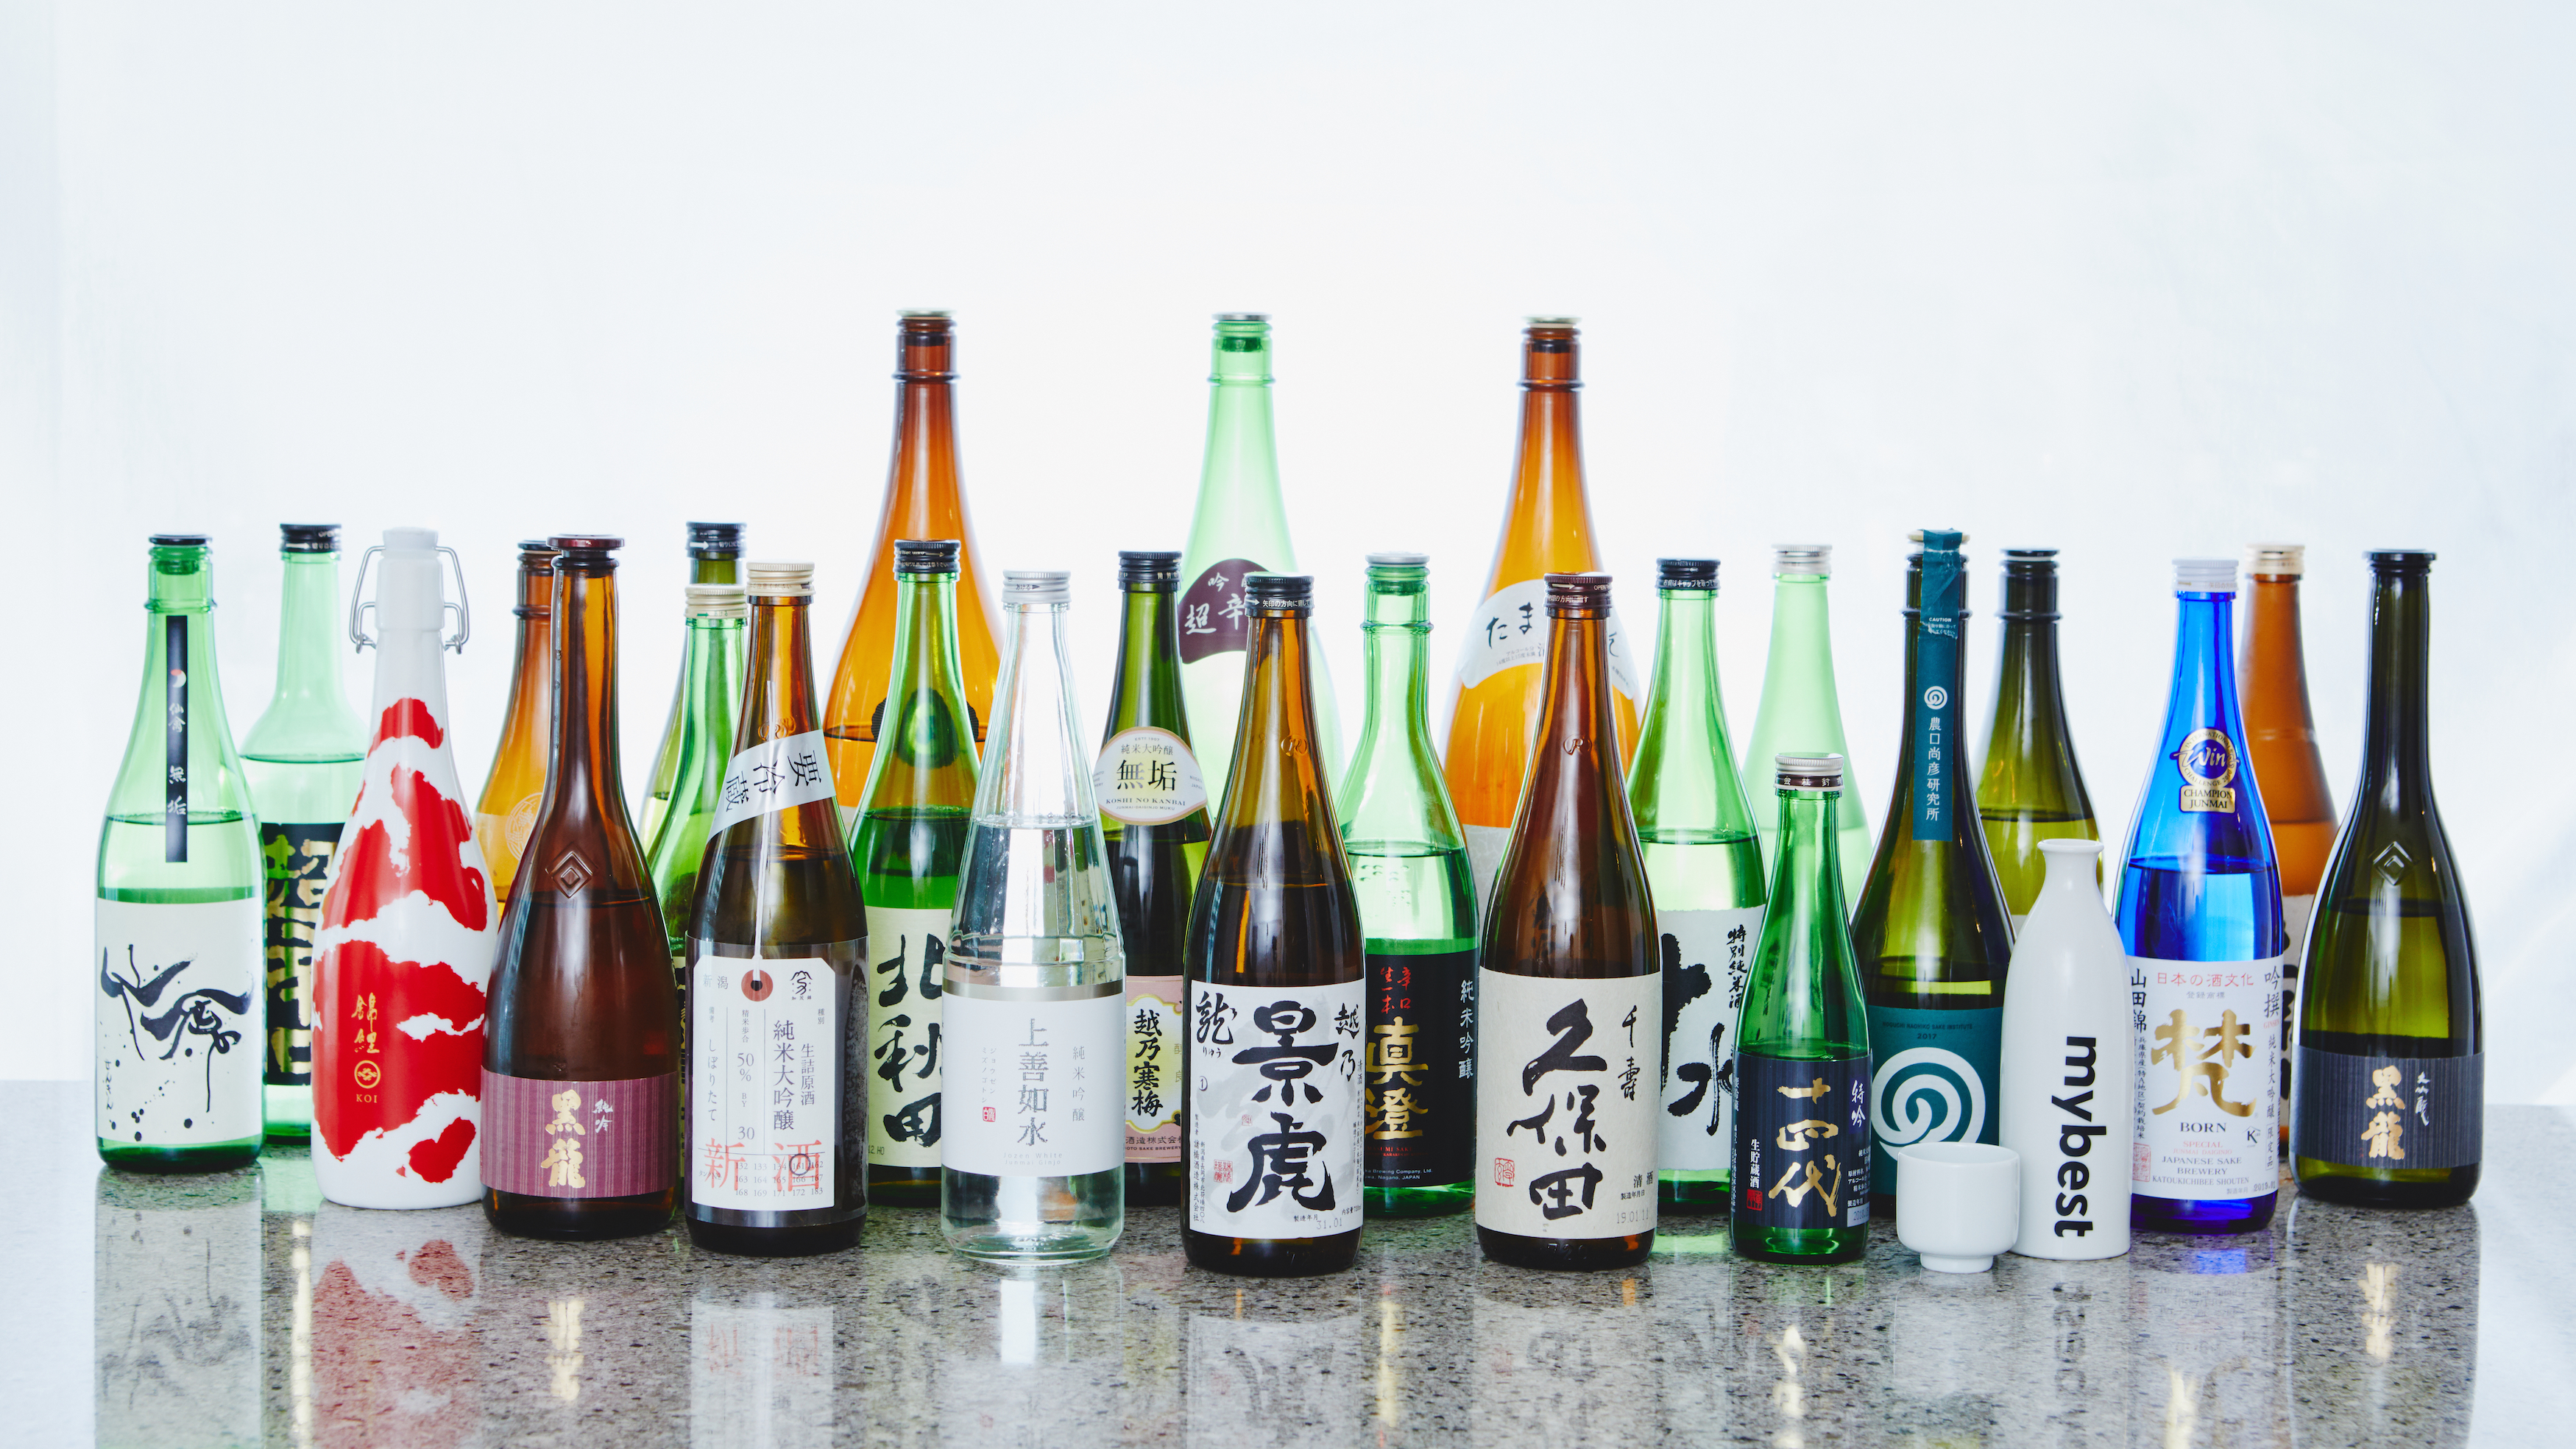 【徹底比較】辛口の日本酒おすすめ人気ランキング25選 | mybest